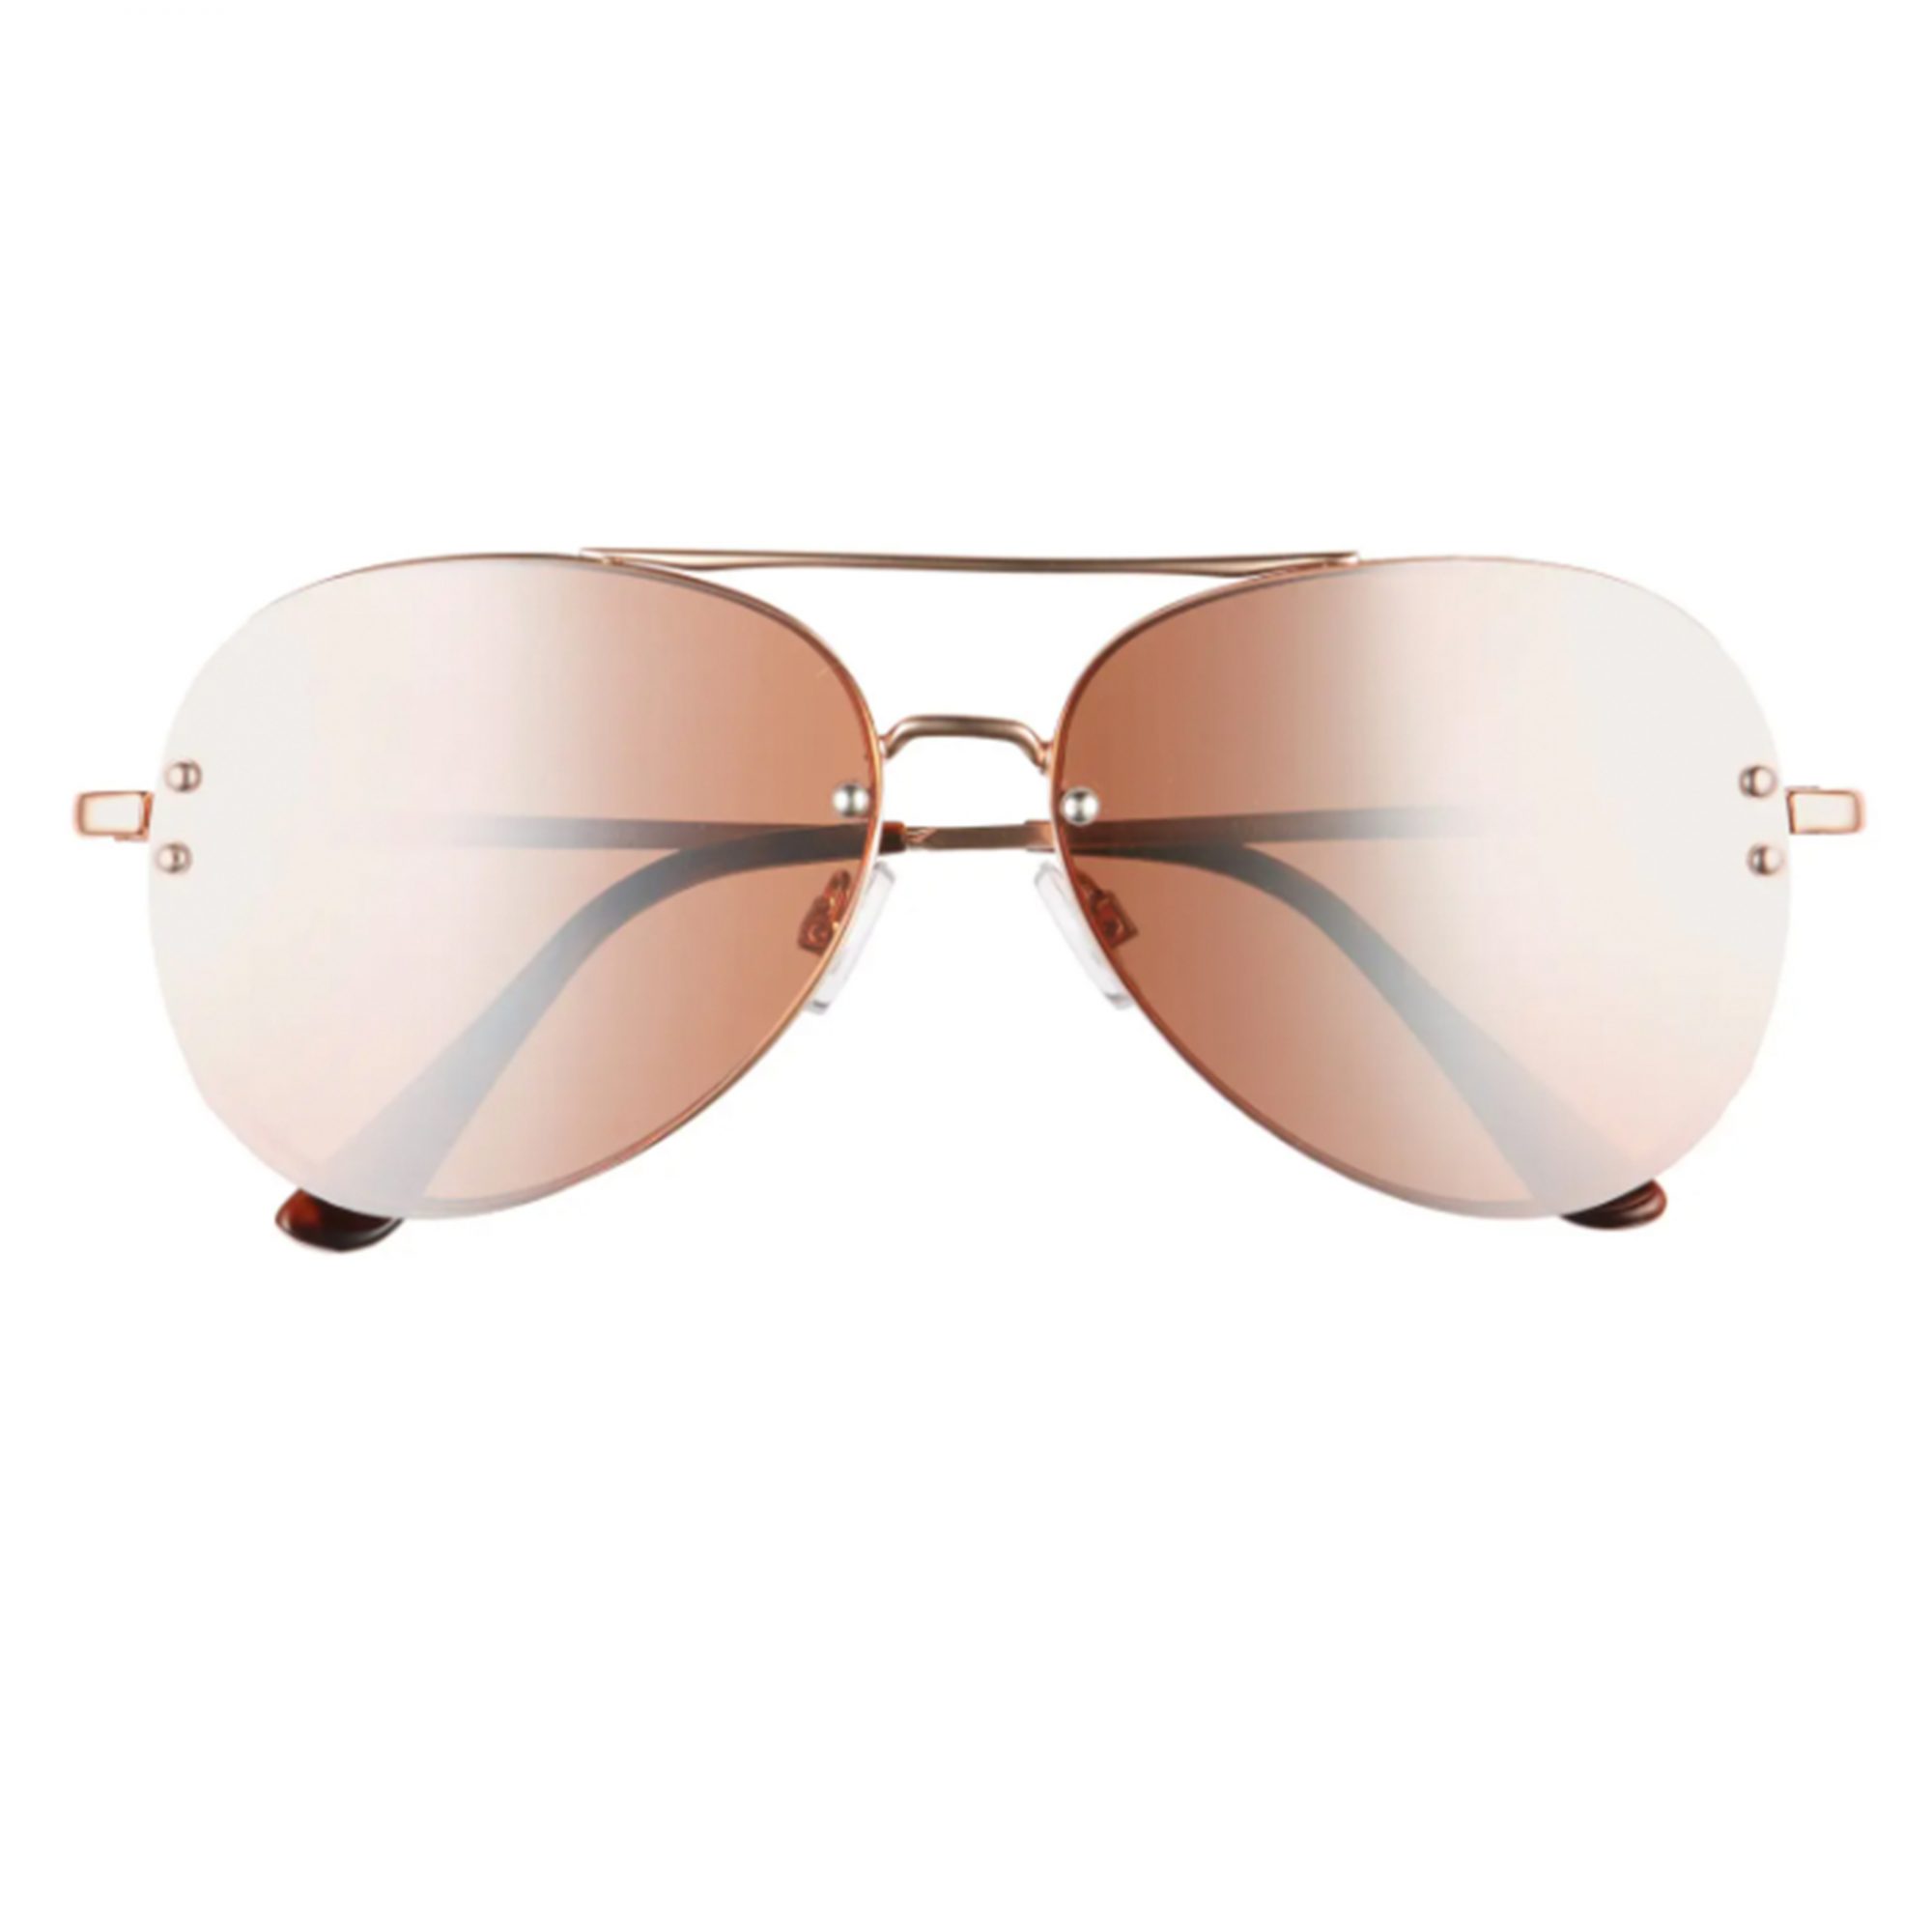 BP-mirrored-aviator-sunglasses